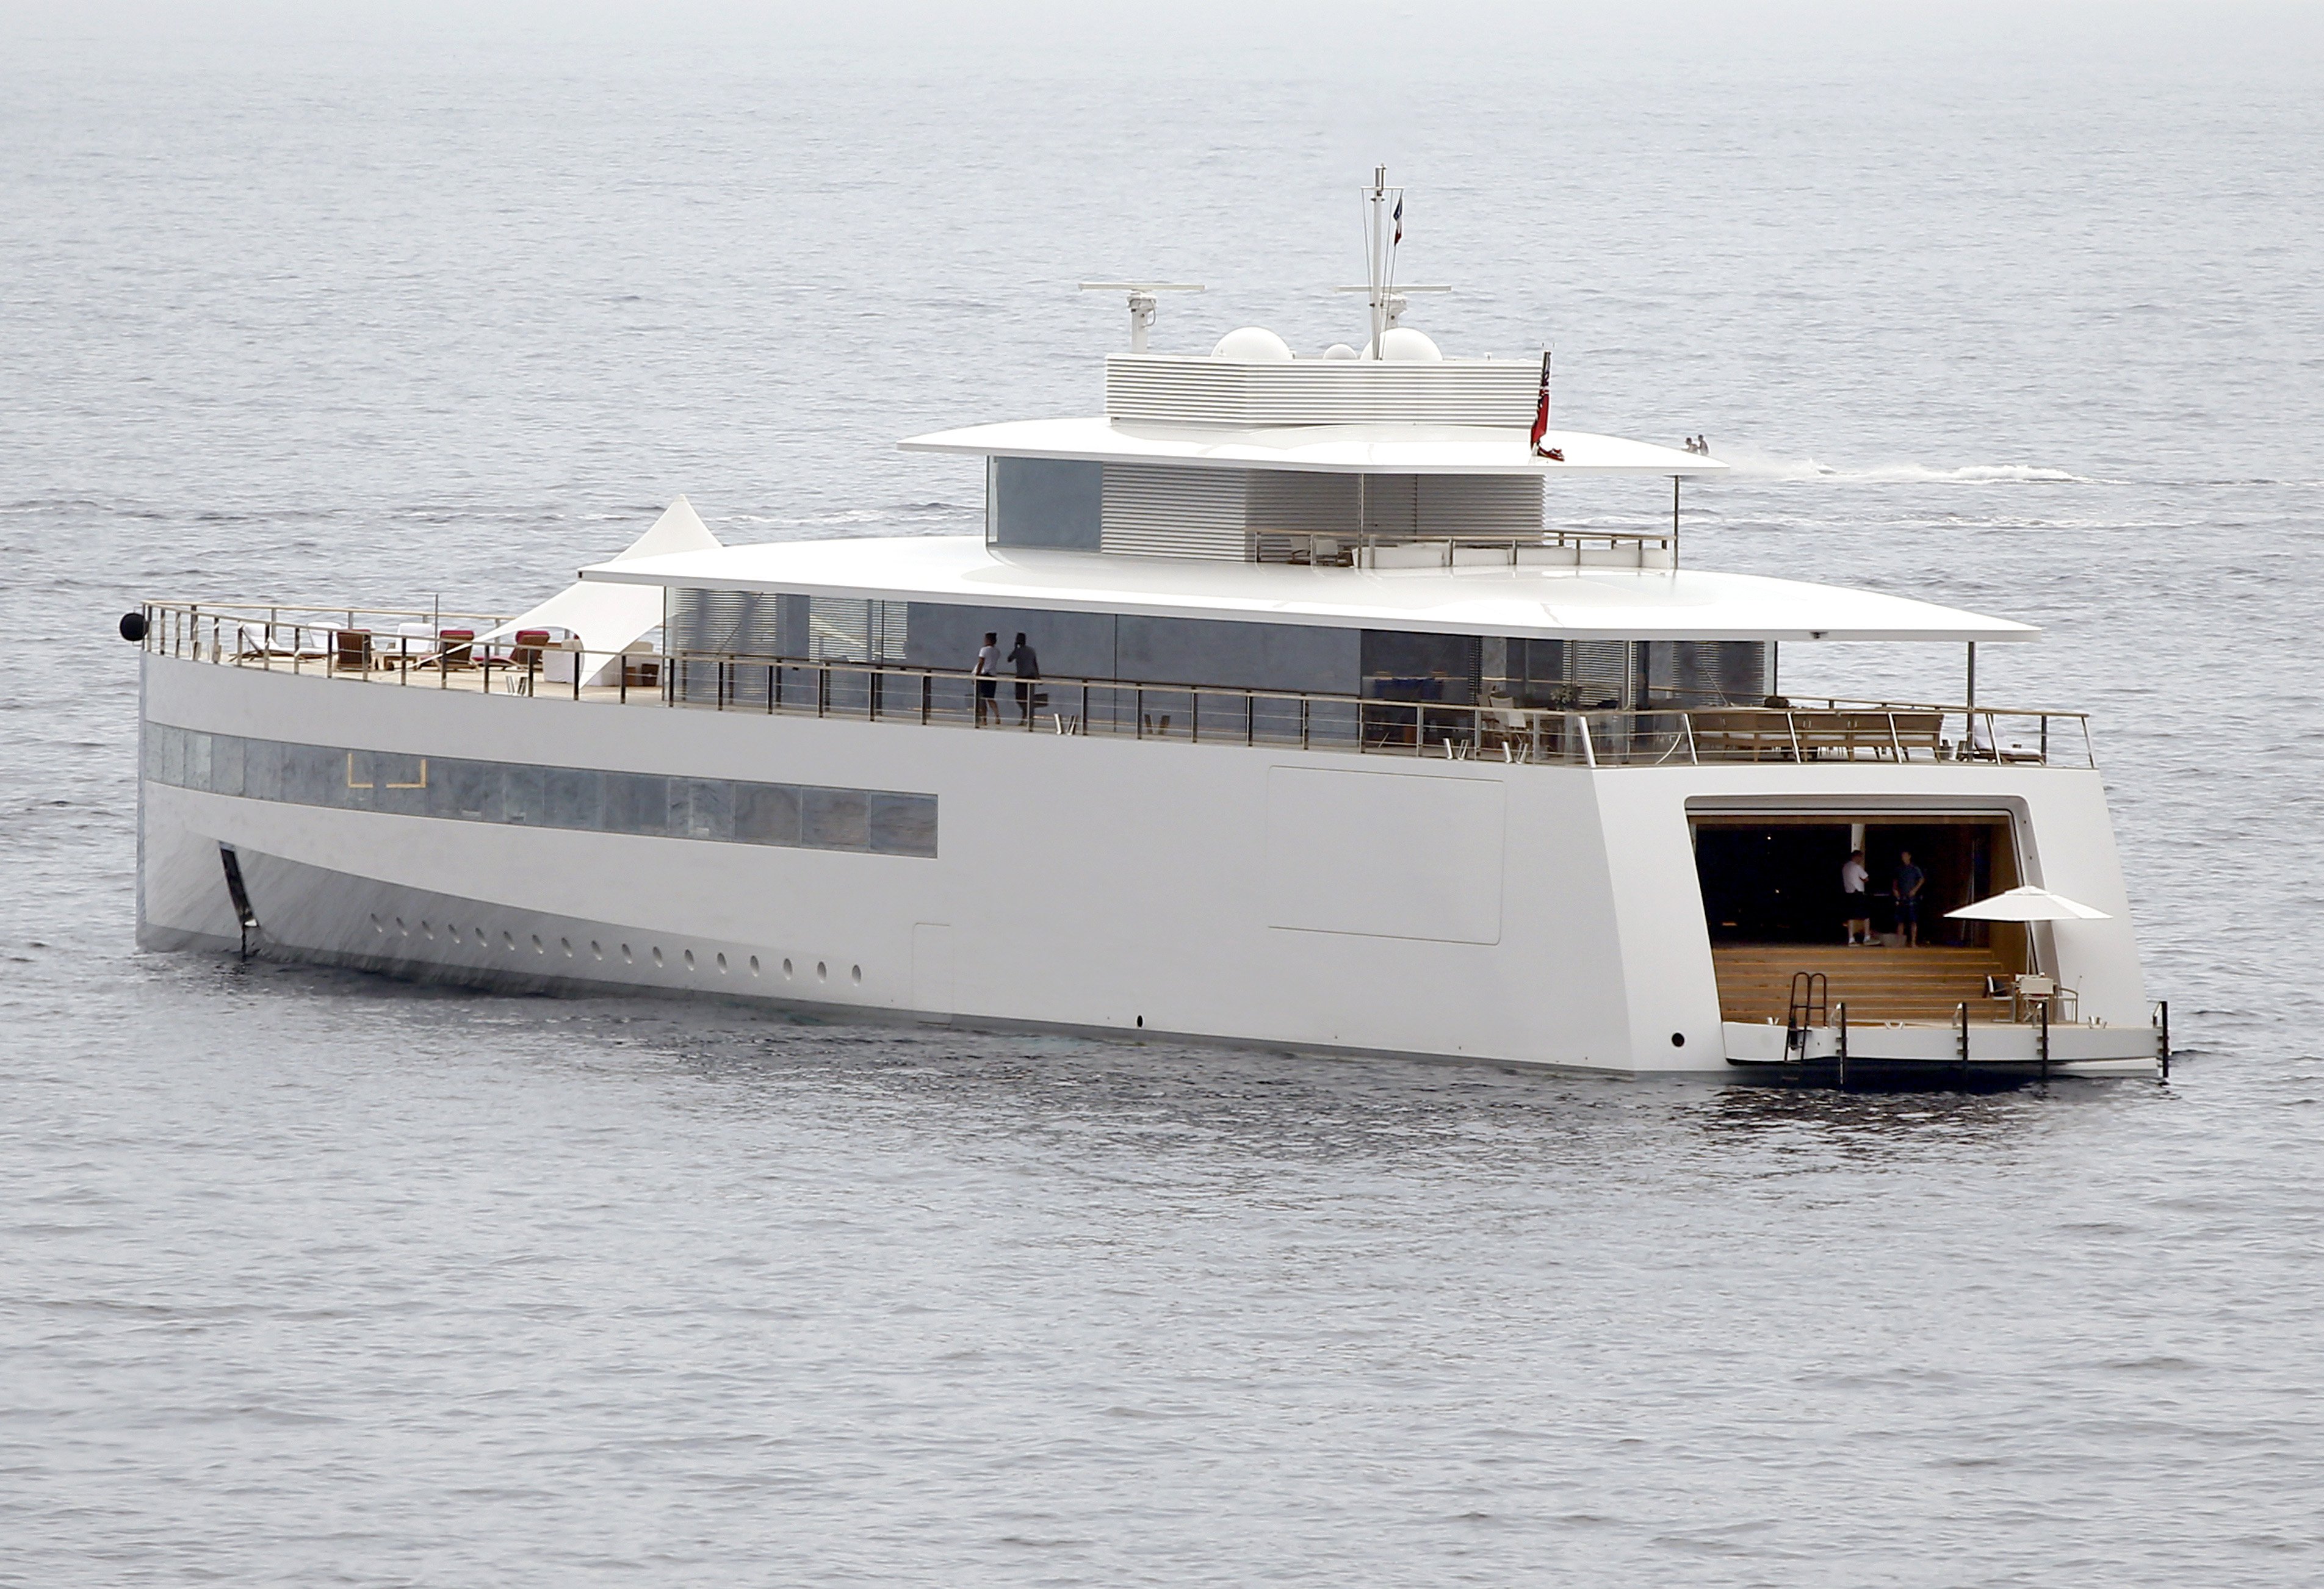 who owns steve jobs yacht now